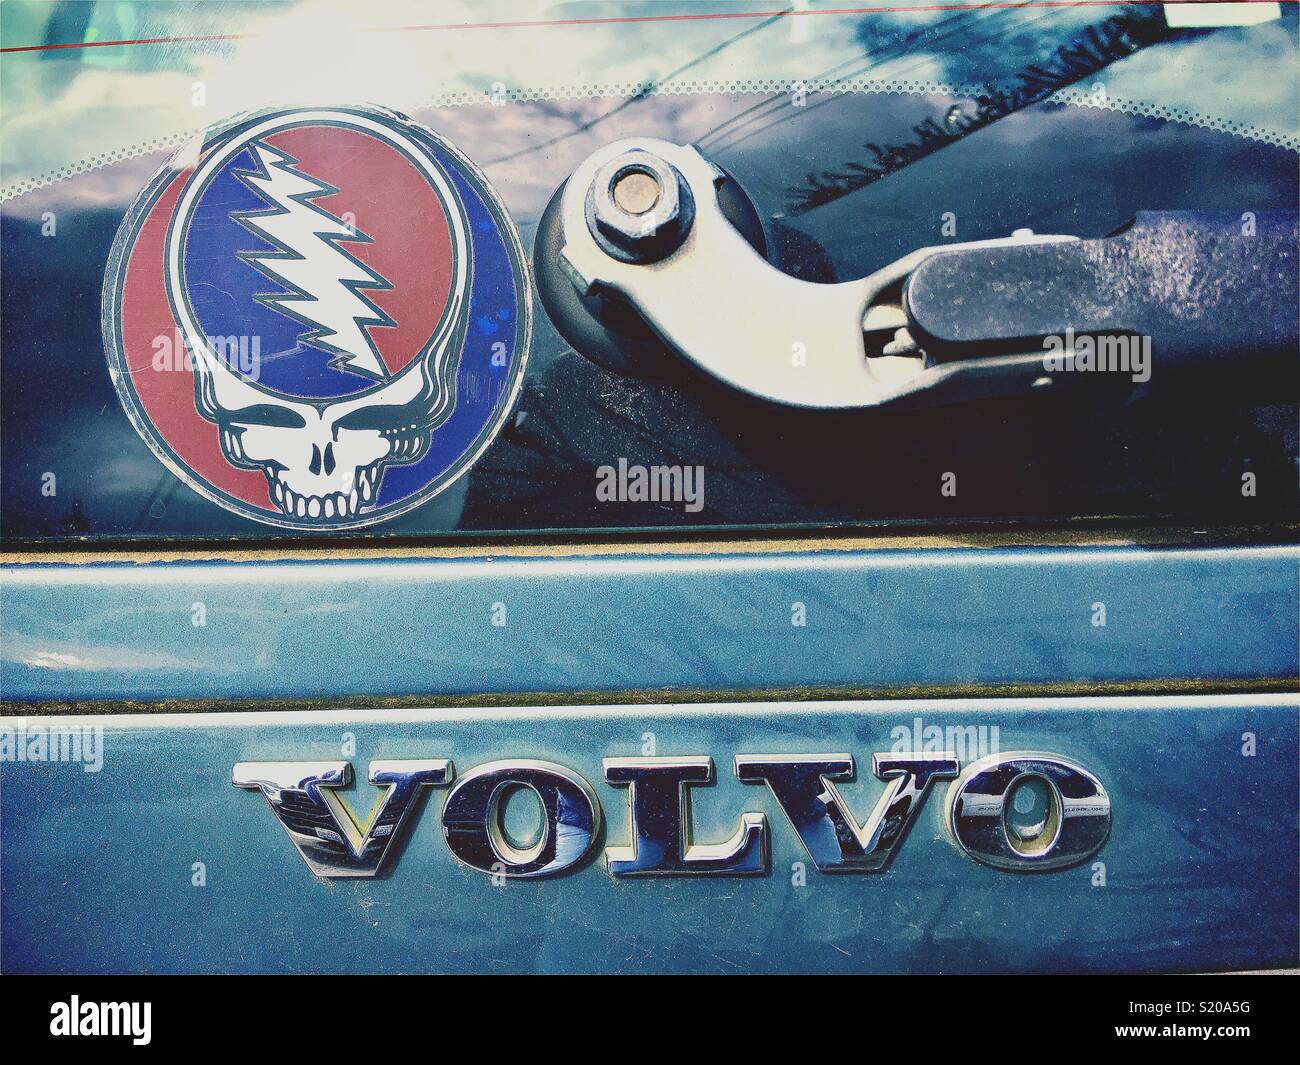 Grateful Dead adesivo sul lunotto posteriore di una Volvo Foto Stock